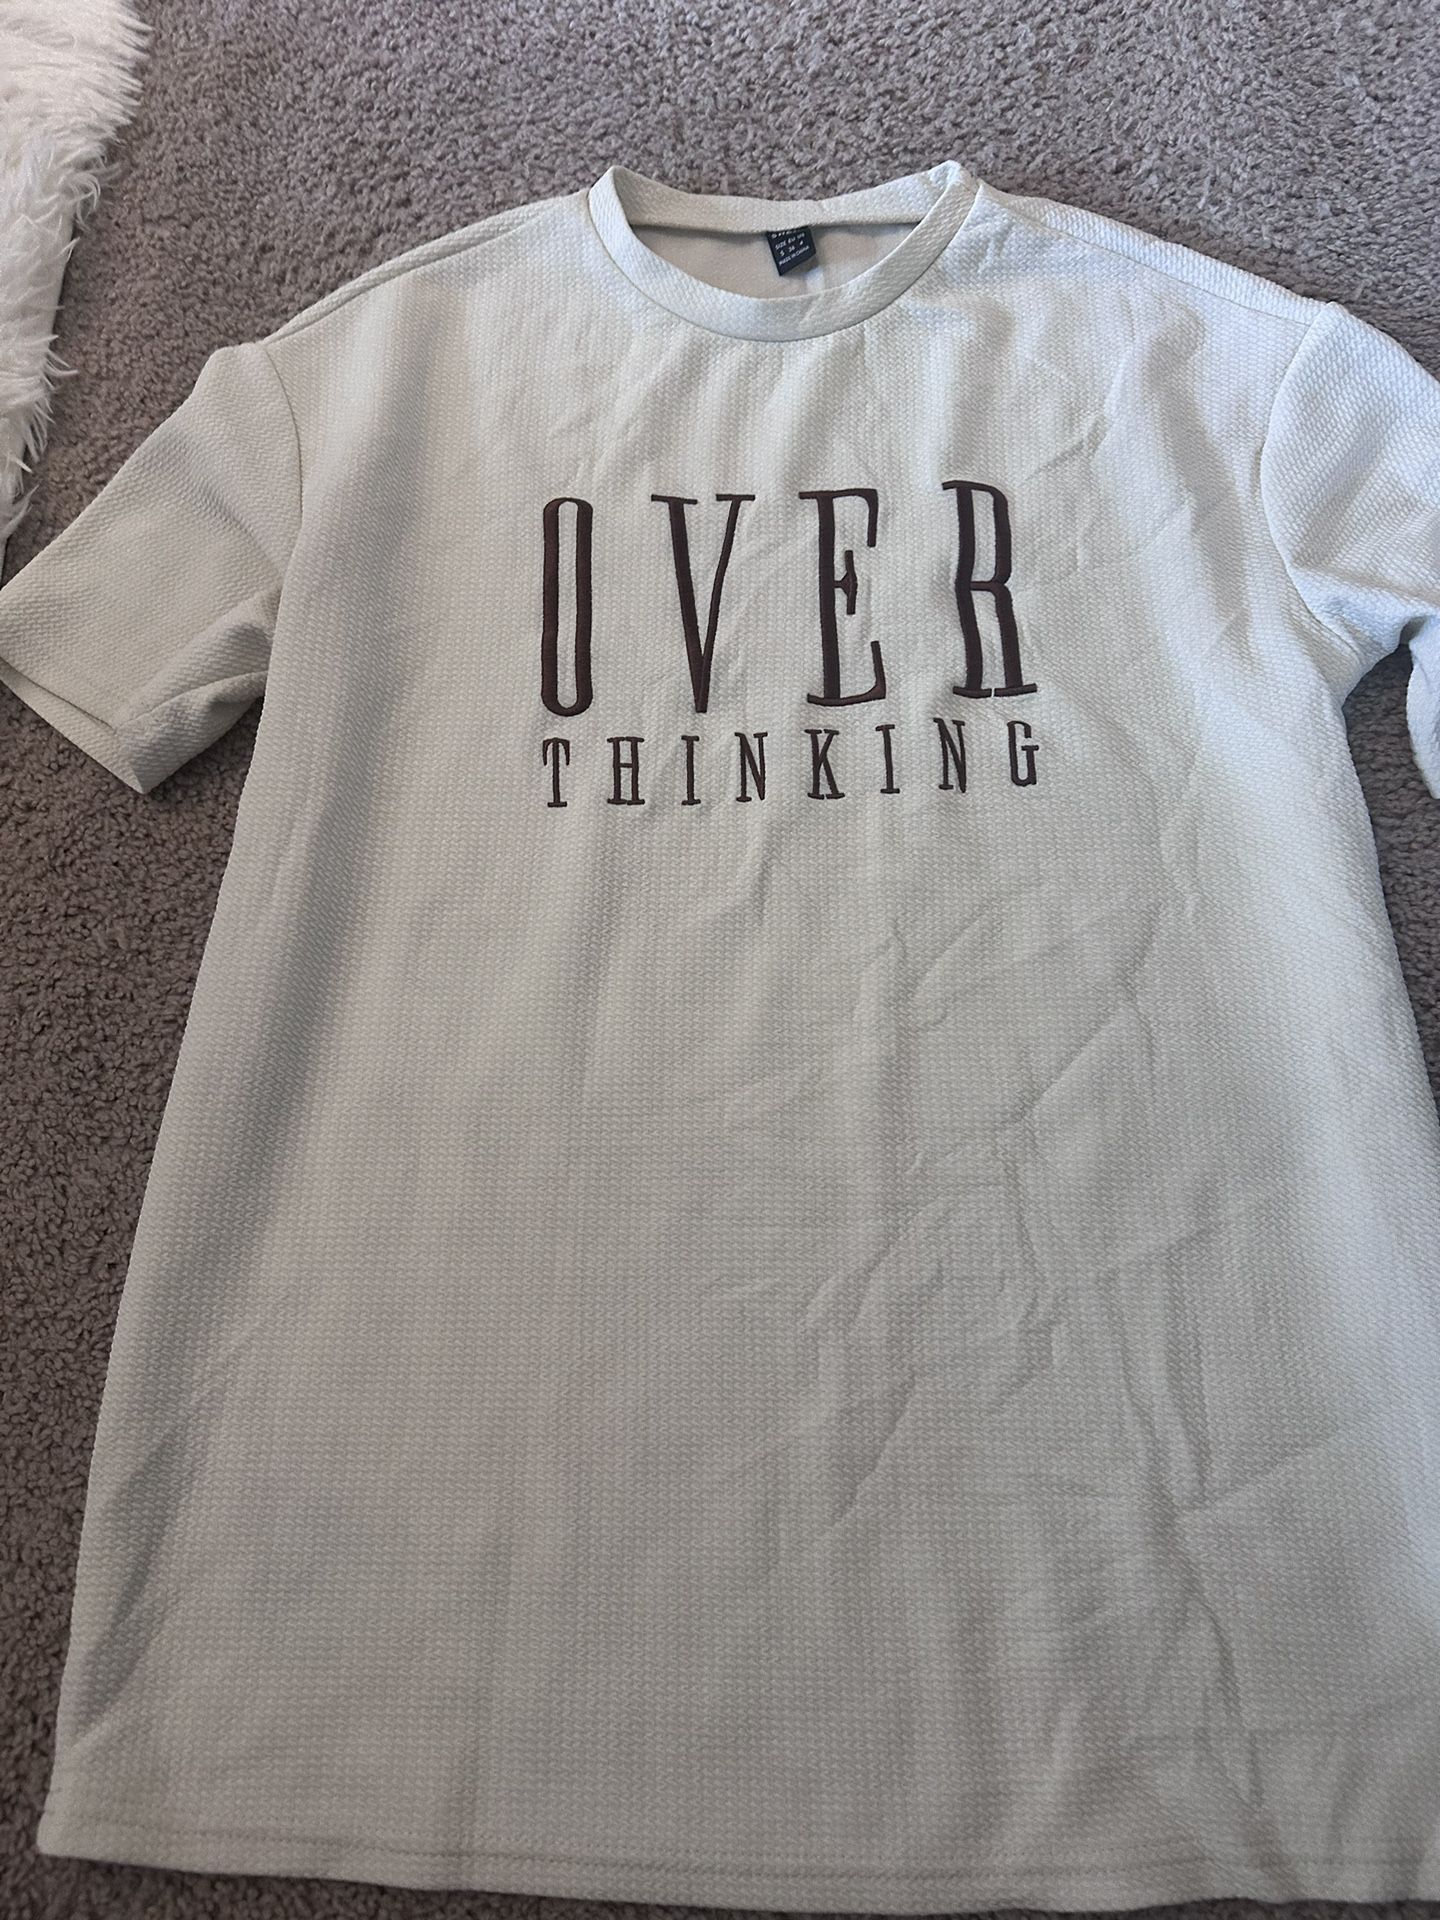 Overthinking shirt 